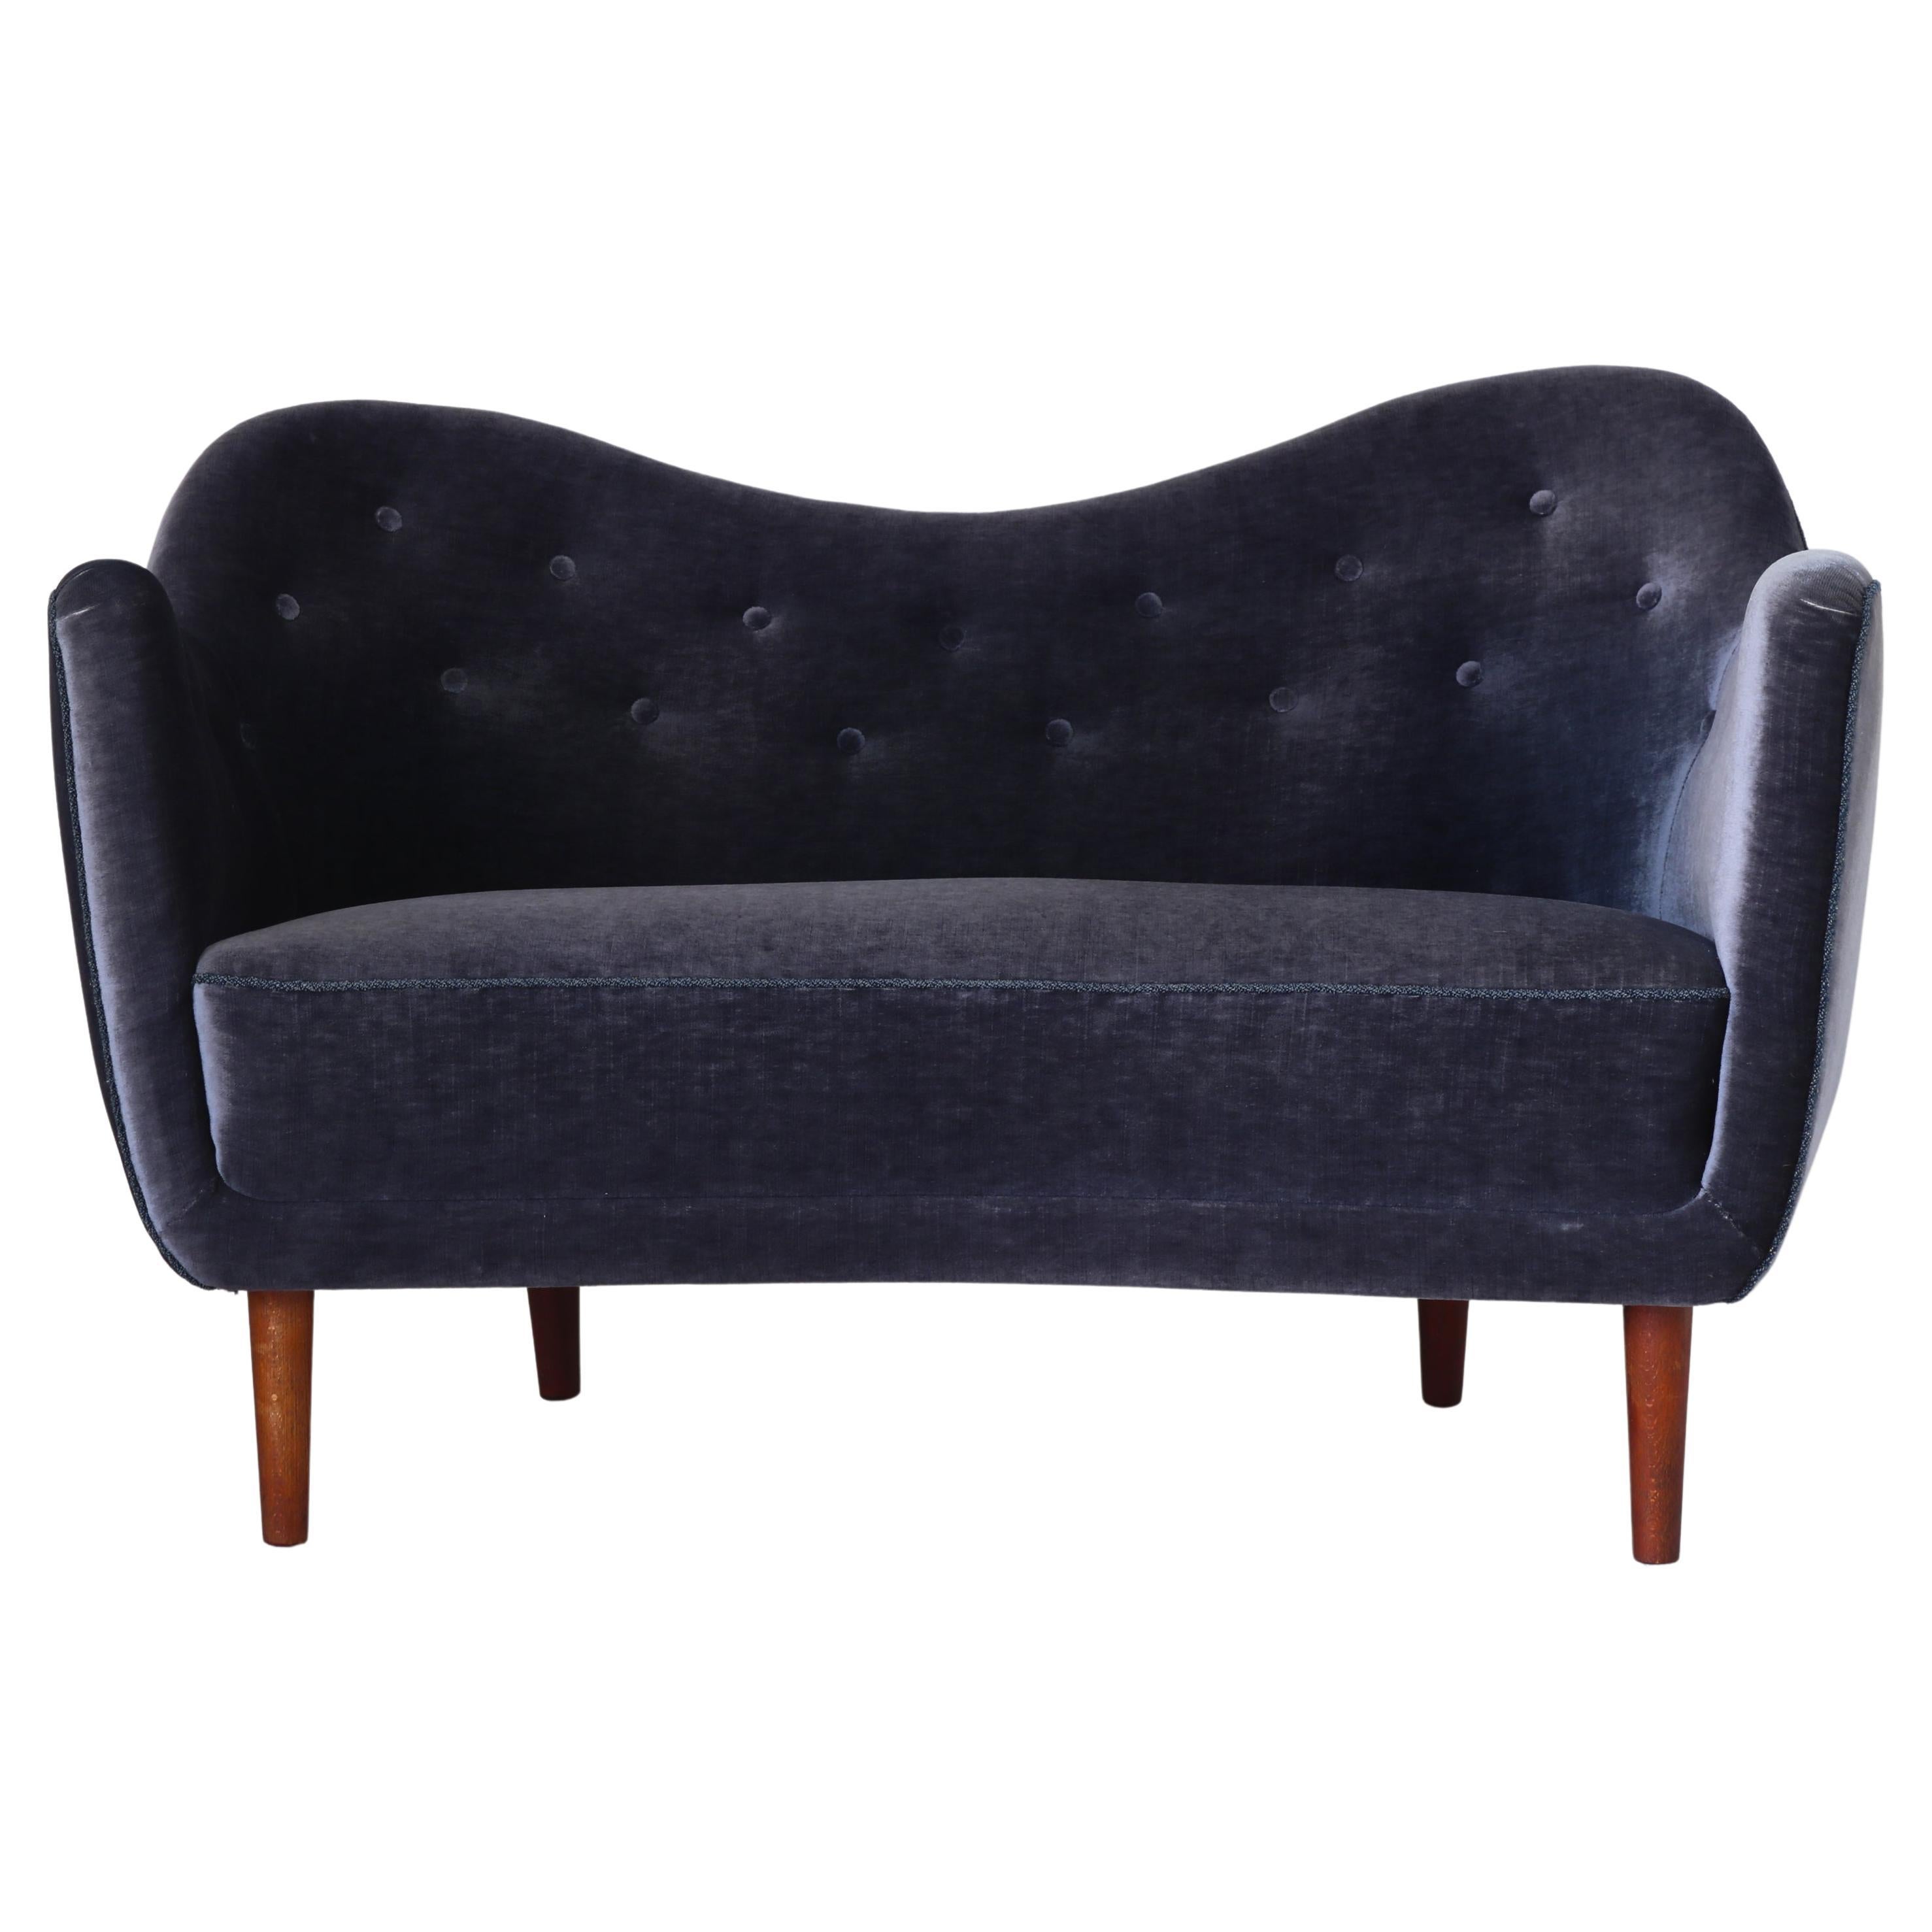 Danish Modern Finn Juhl "46" Sofa, Dark Lavender Blue Velvet, Carl Brørup, 1940s